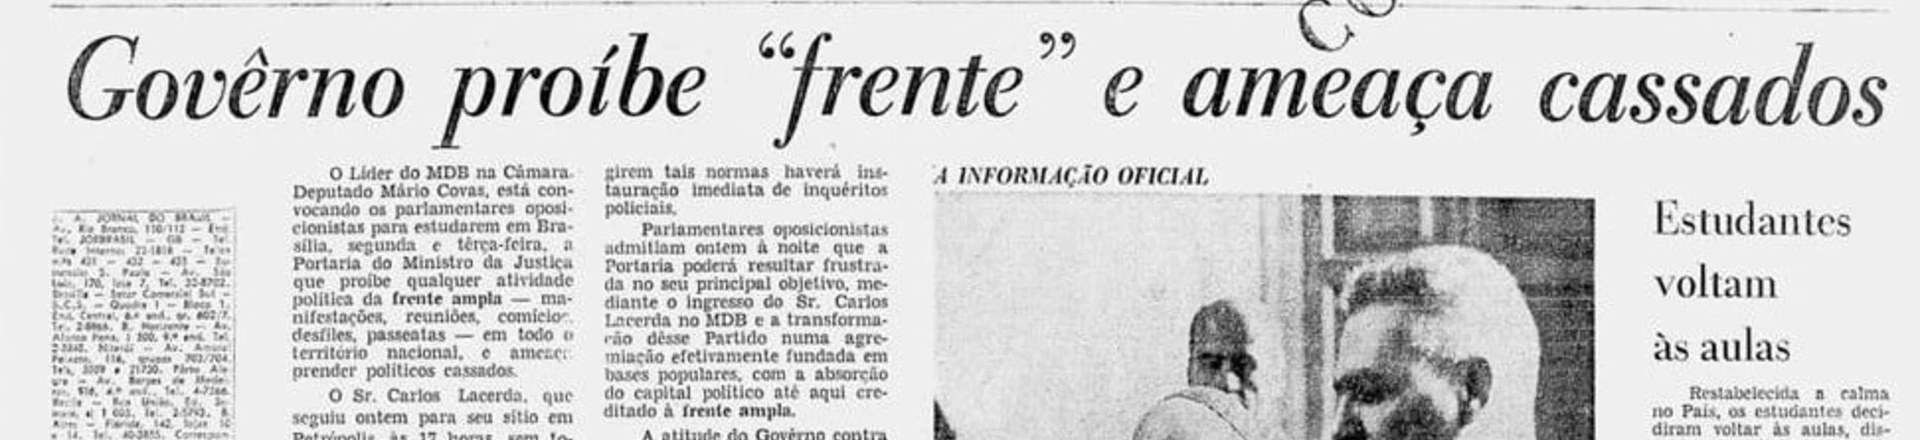 Reprodução da capa do Jornal do Brasil de 6 de abril de 1968